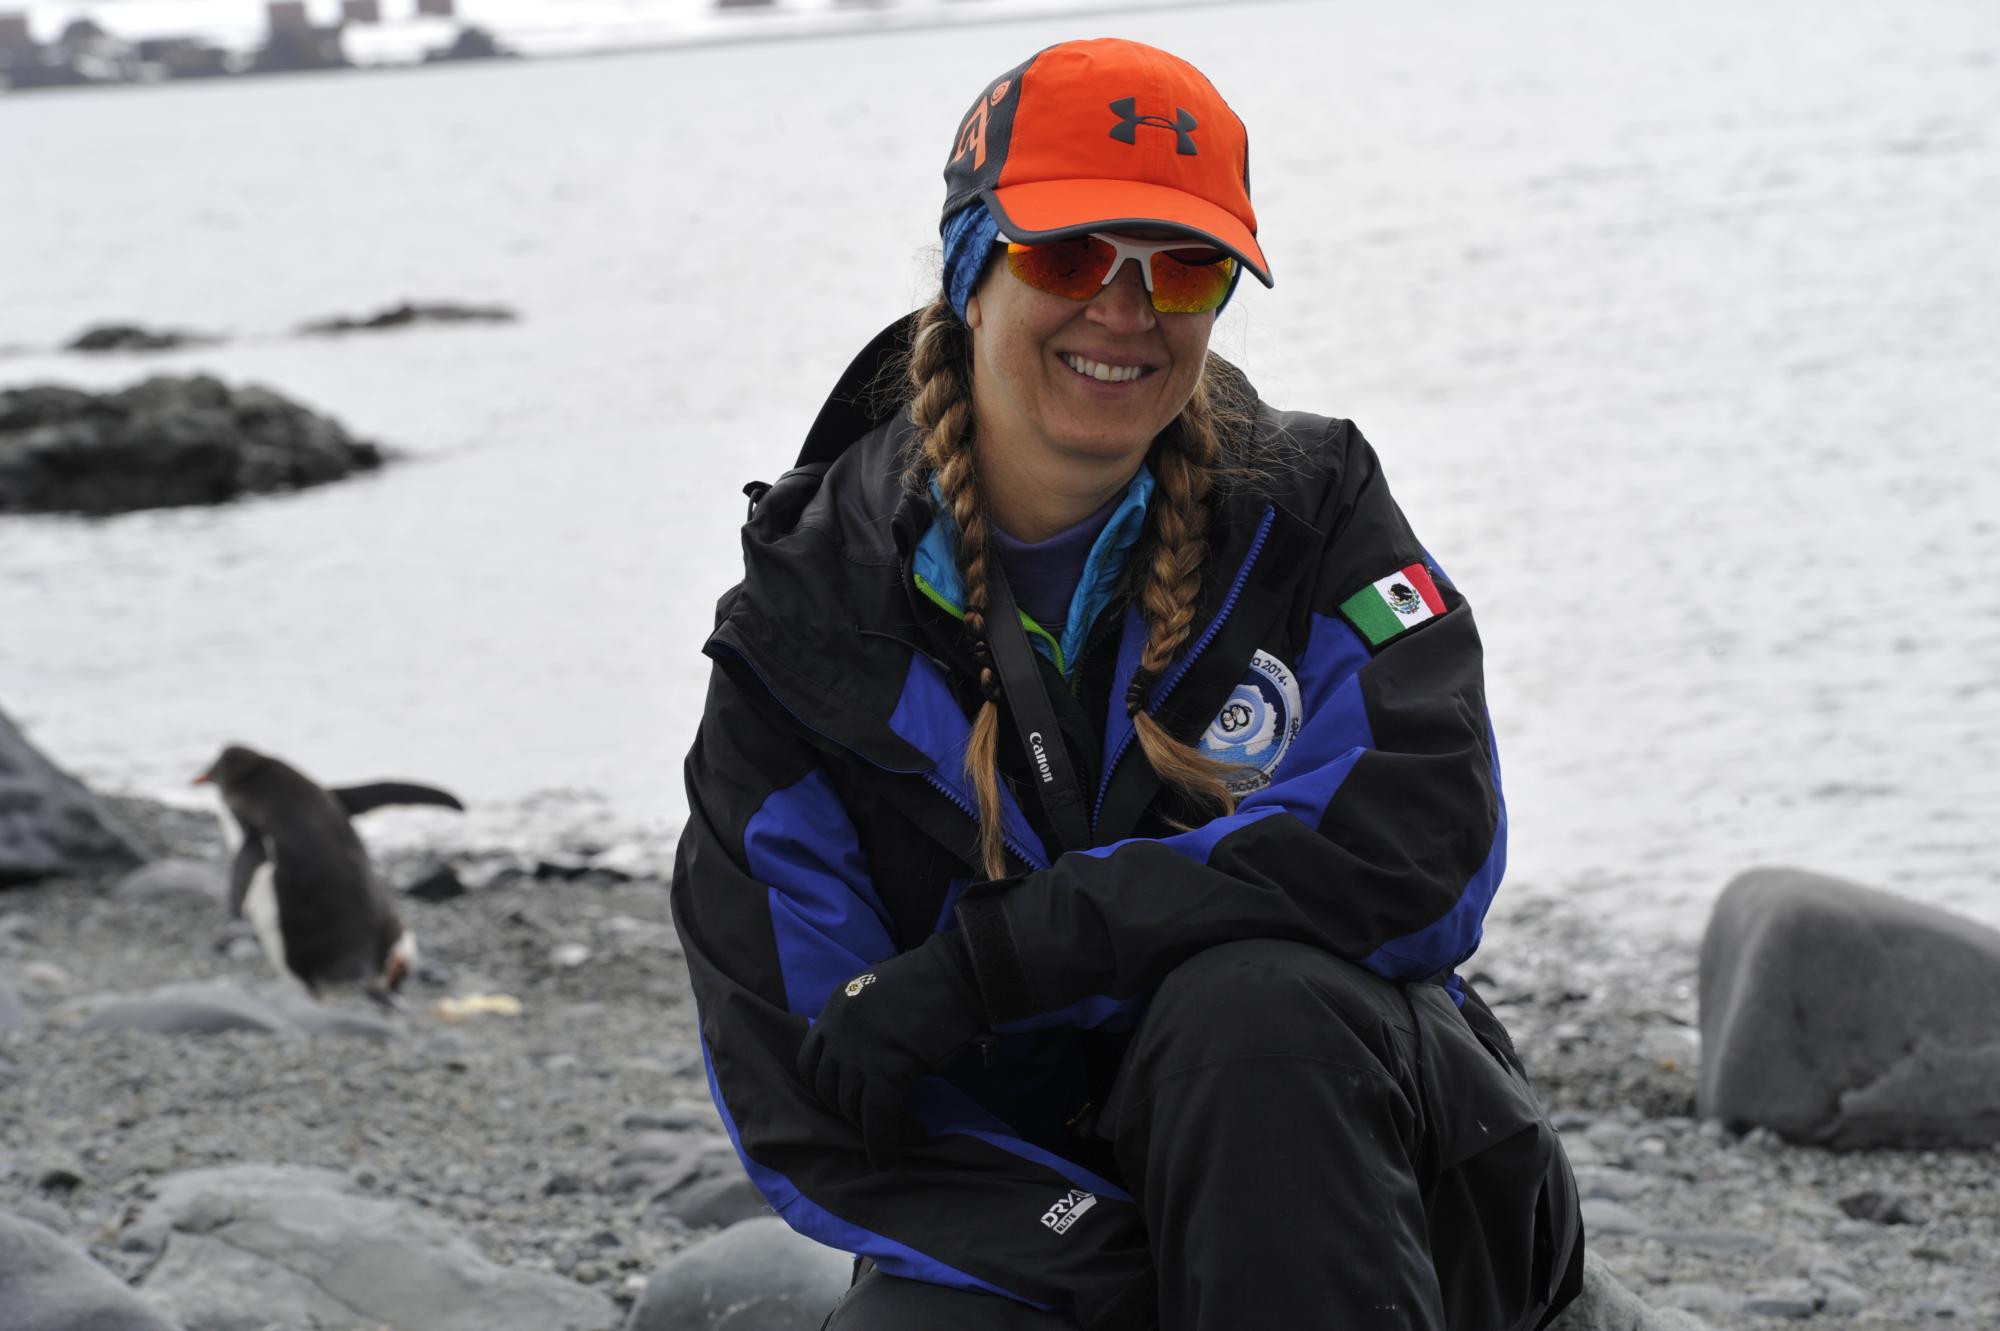 $!Impulsada por el amor y el apoyo de sus seres queridos, Karla dedicó cada paso hacia la cumbre del Everest a inspirar y apoyar a la naturaleza, infancias, juventudes y mujeres alrededor del mundo, celebrando 25 años de compromiso.